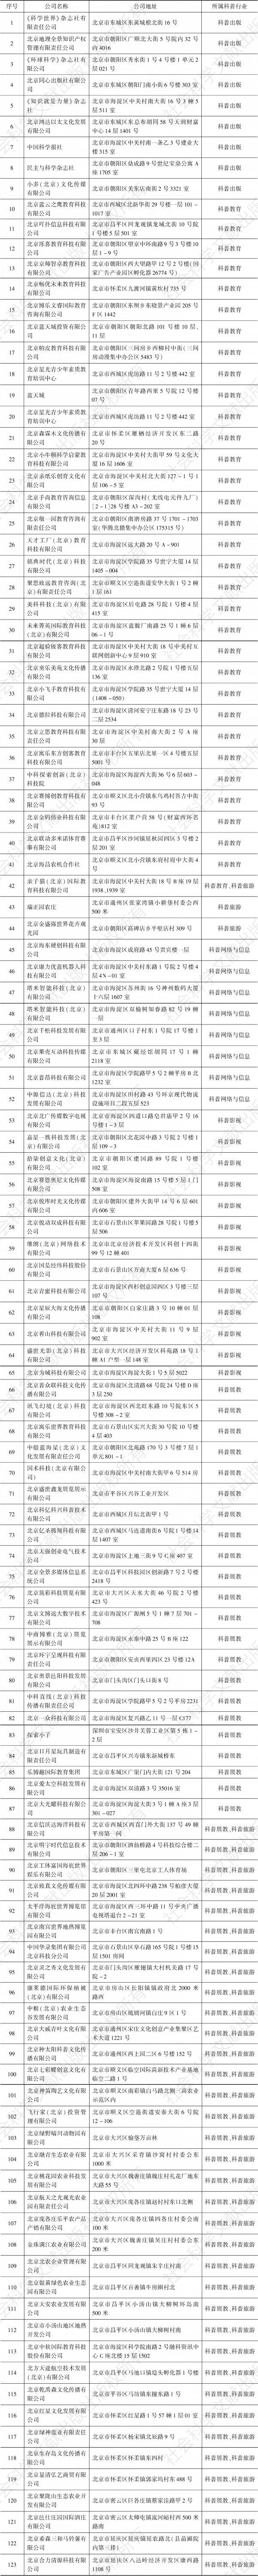 表2 北京市科普企业名单